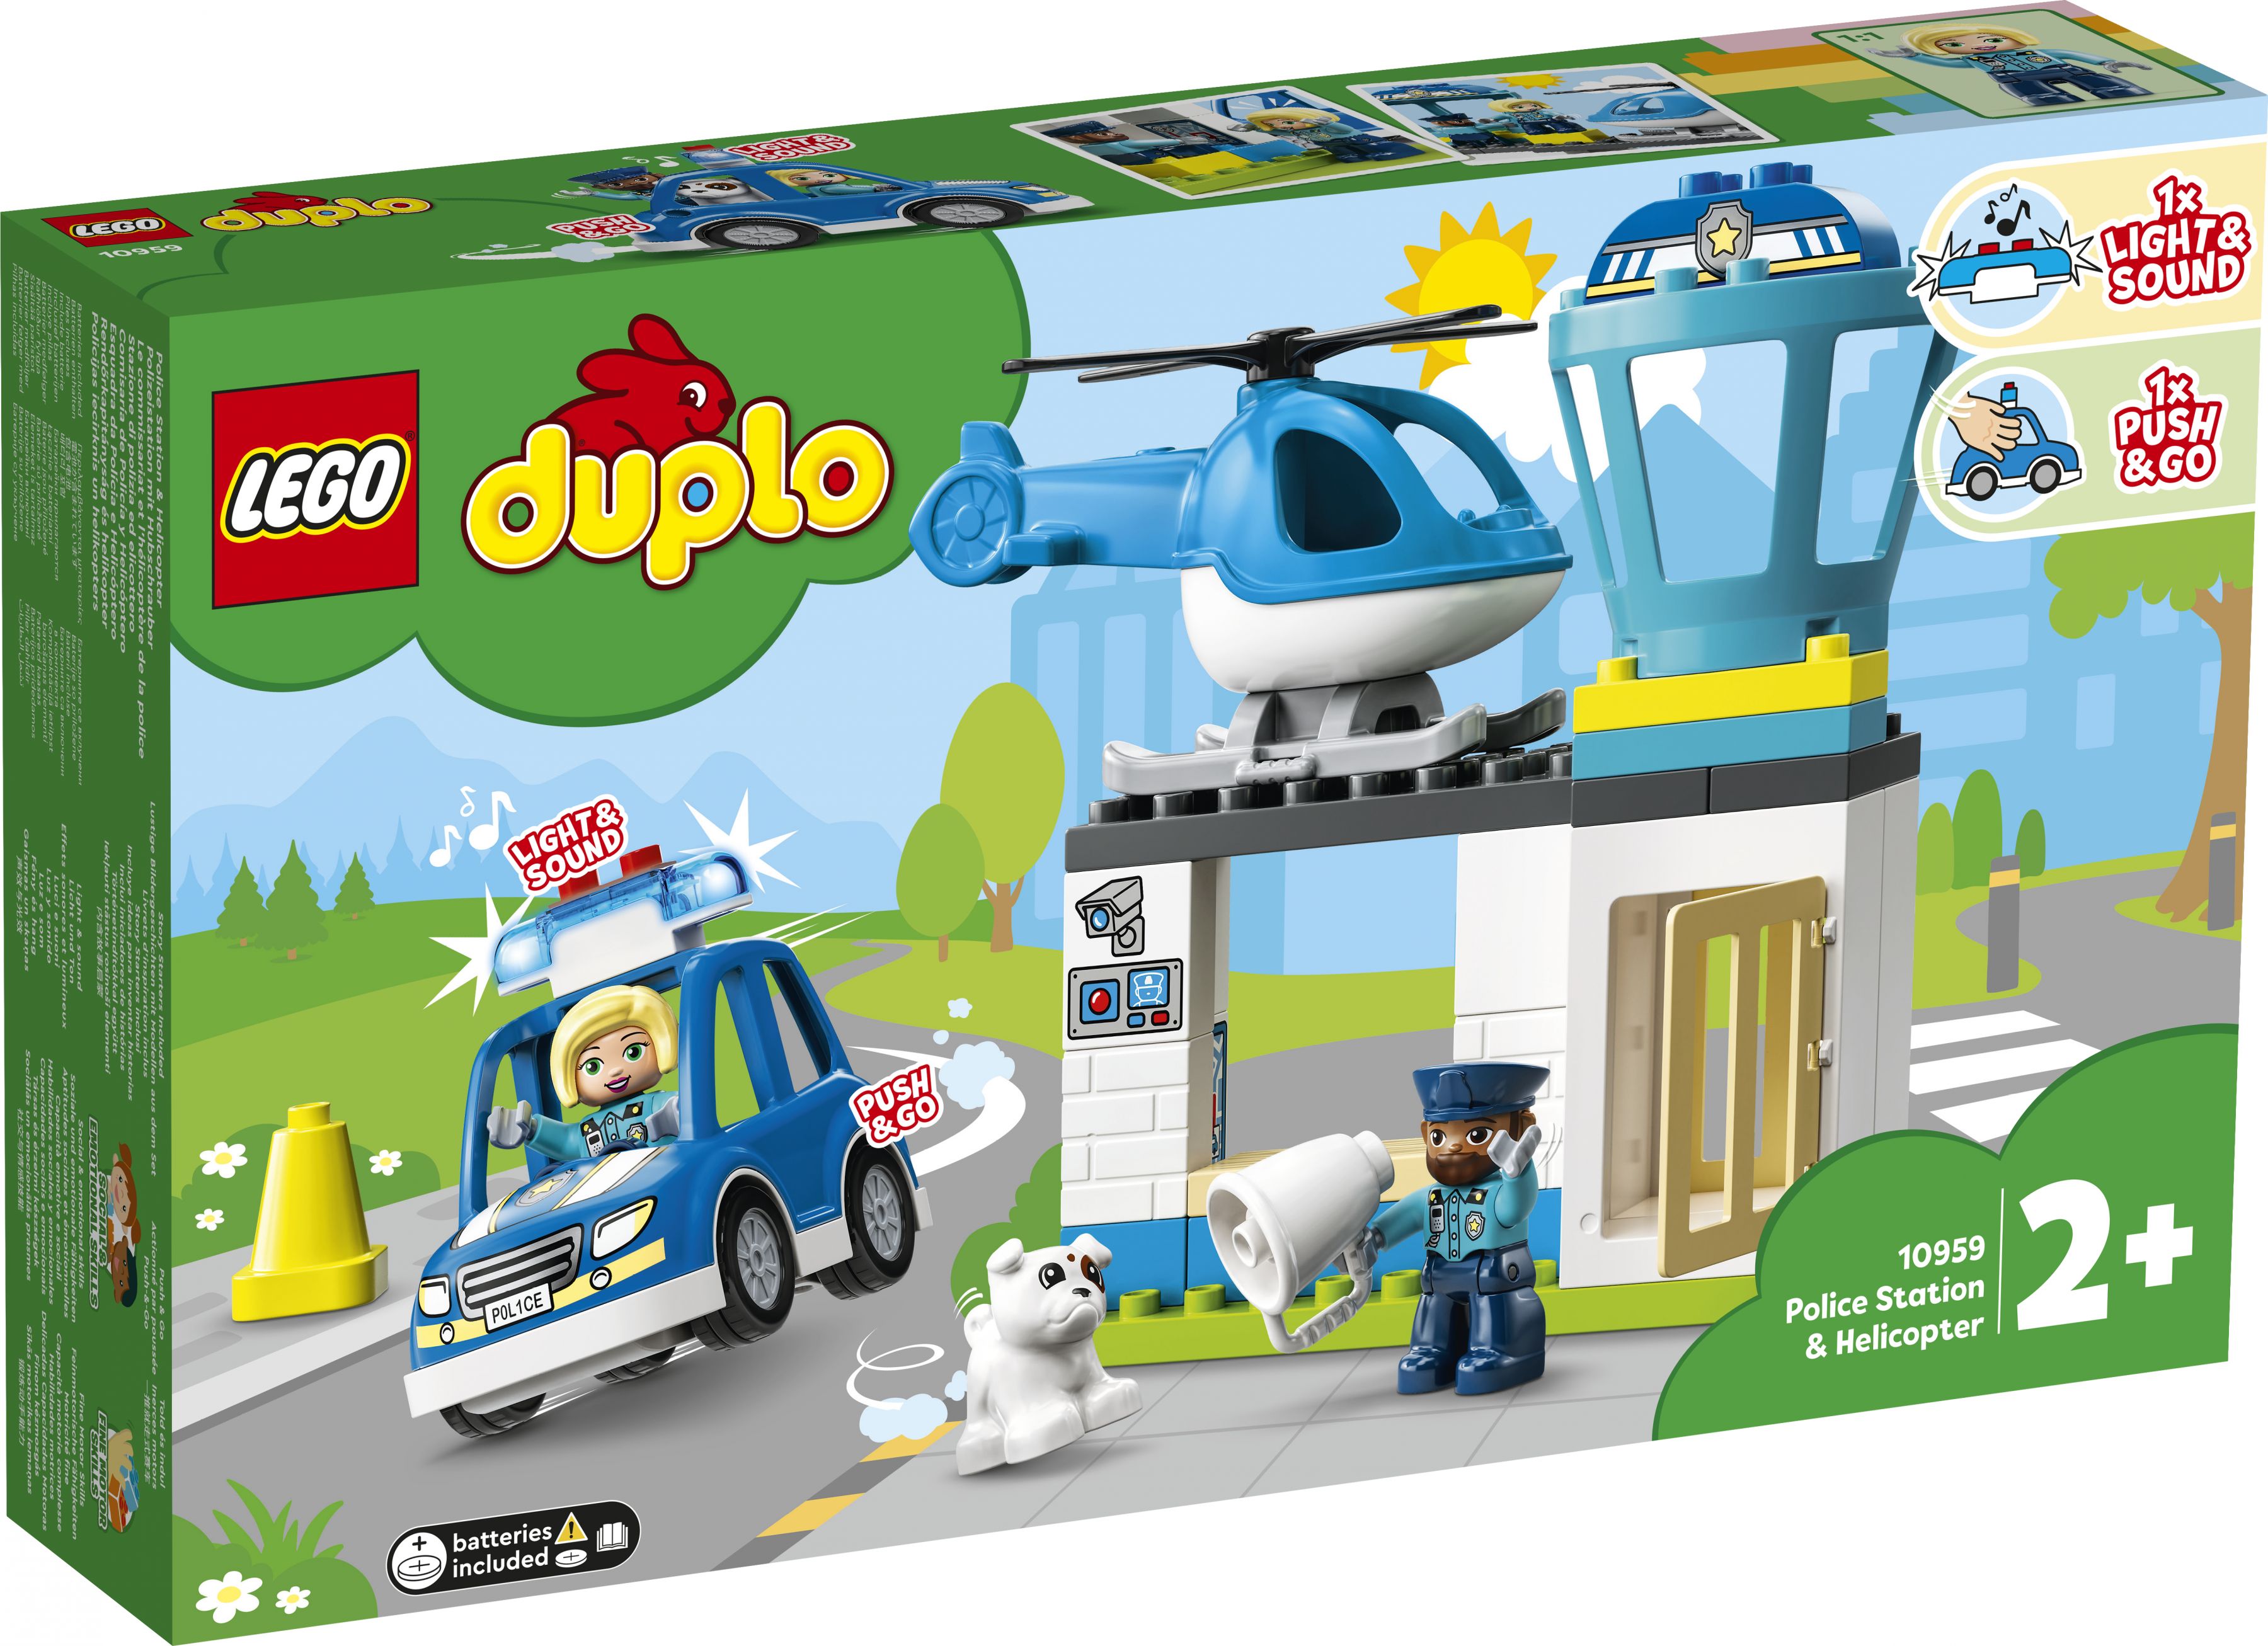 LEGO Duplo 10959 Polizeistation mit Hubschrauber LEGO_10959_Box1_v29.jpg